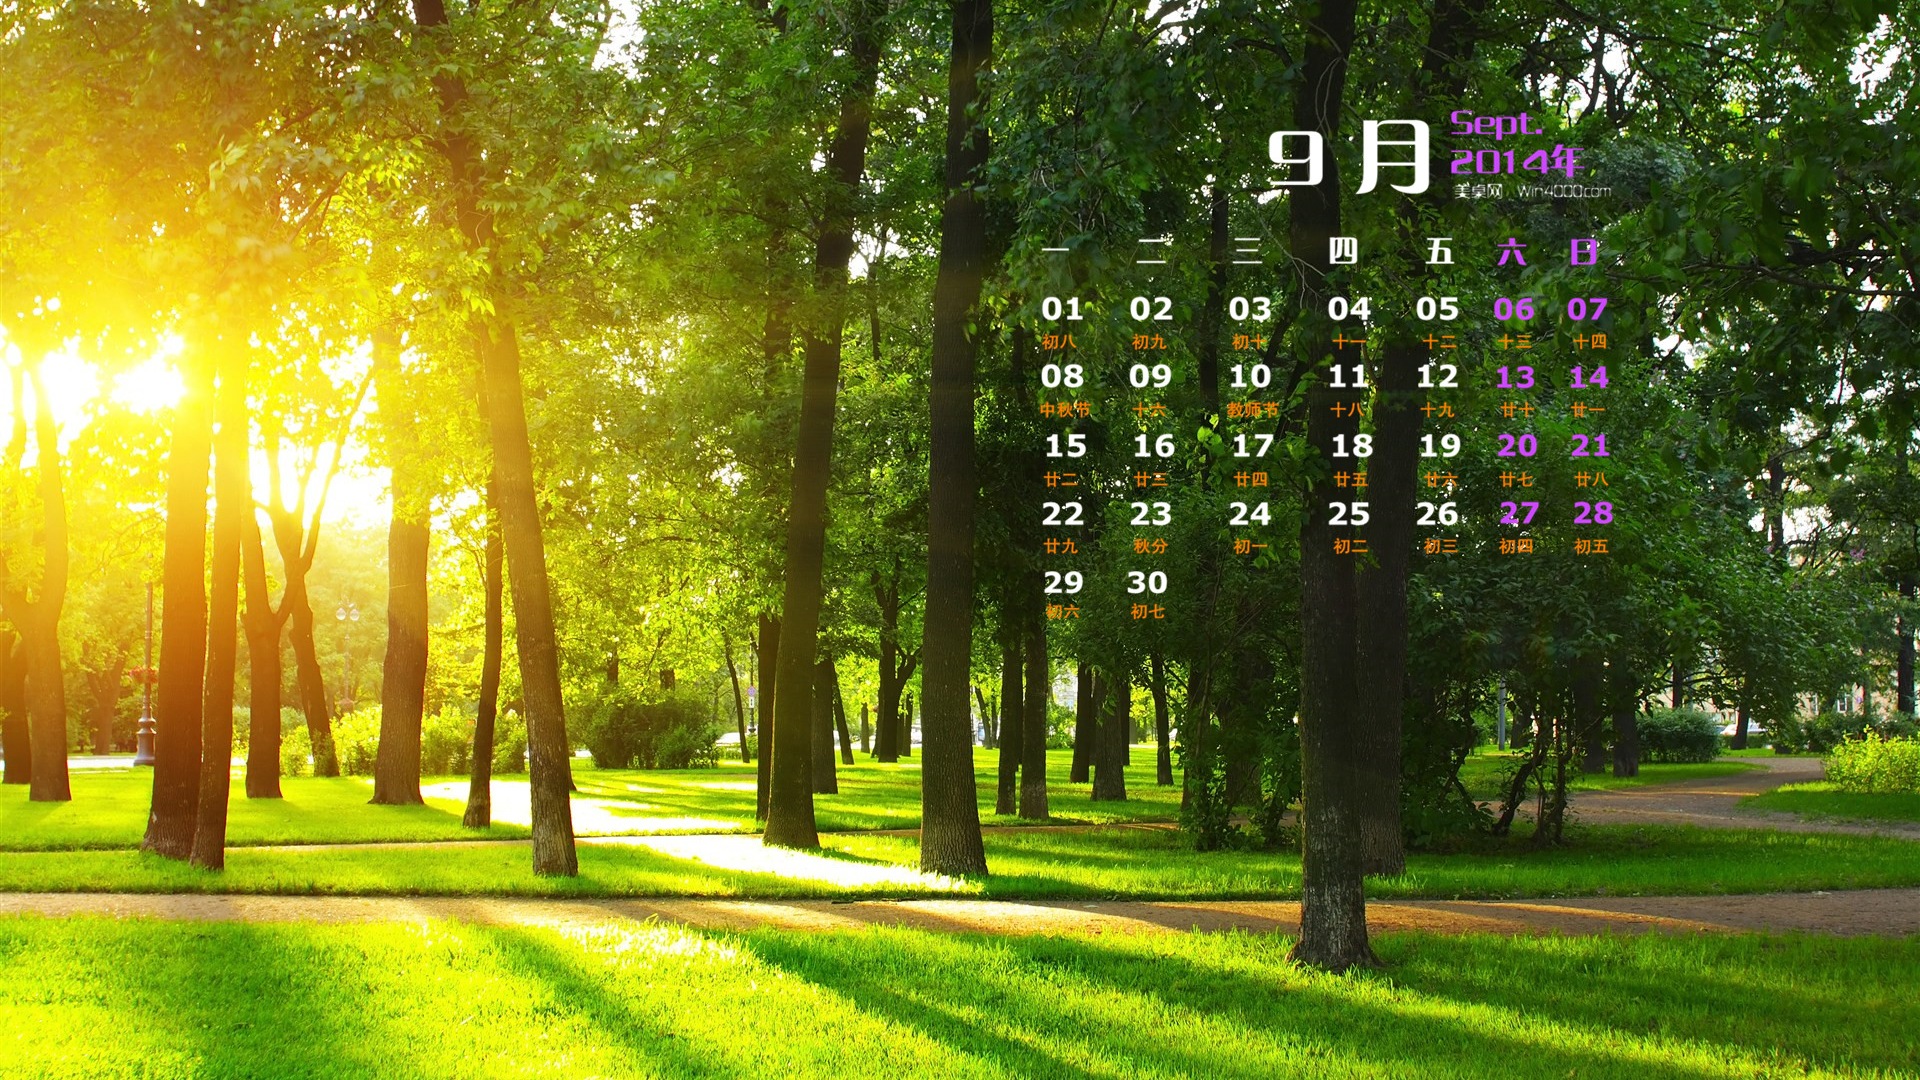 09 2014 wallpaper Calendario (1) #19 - 1920x1080